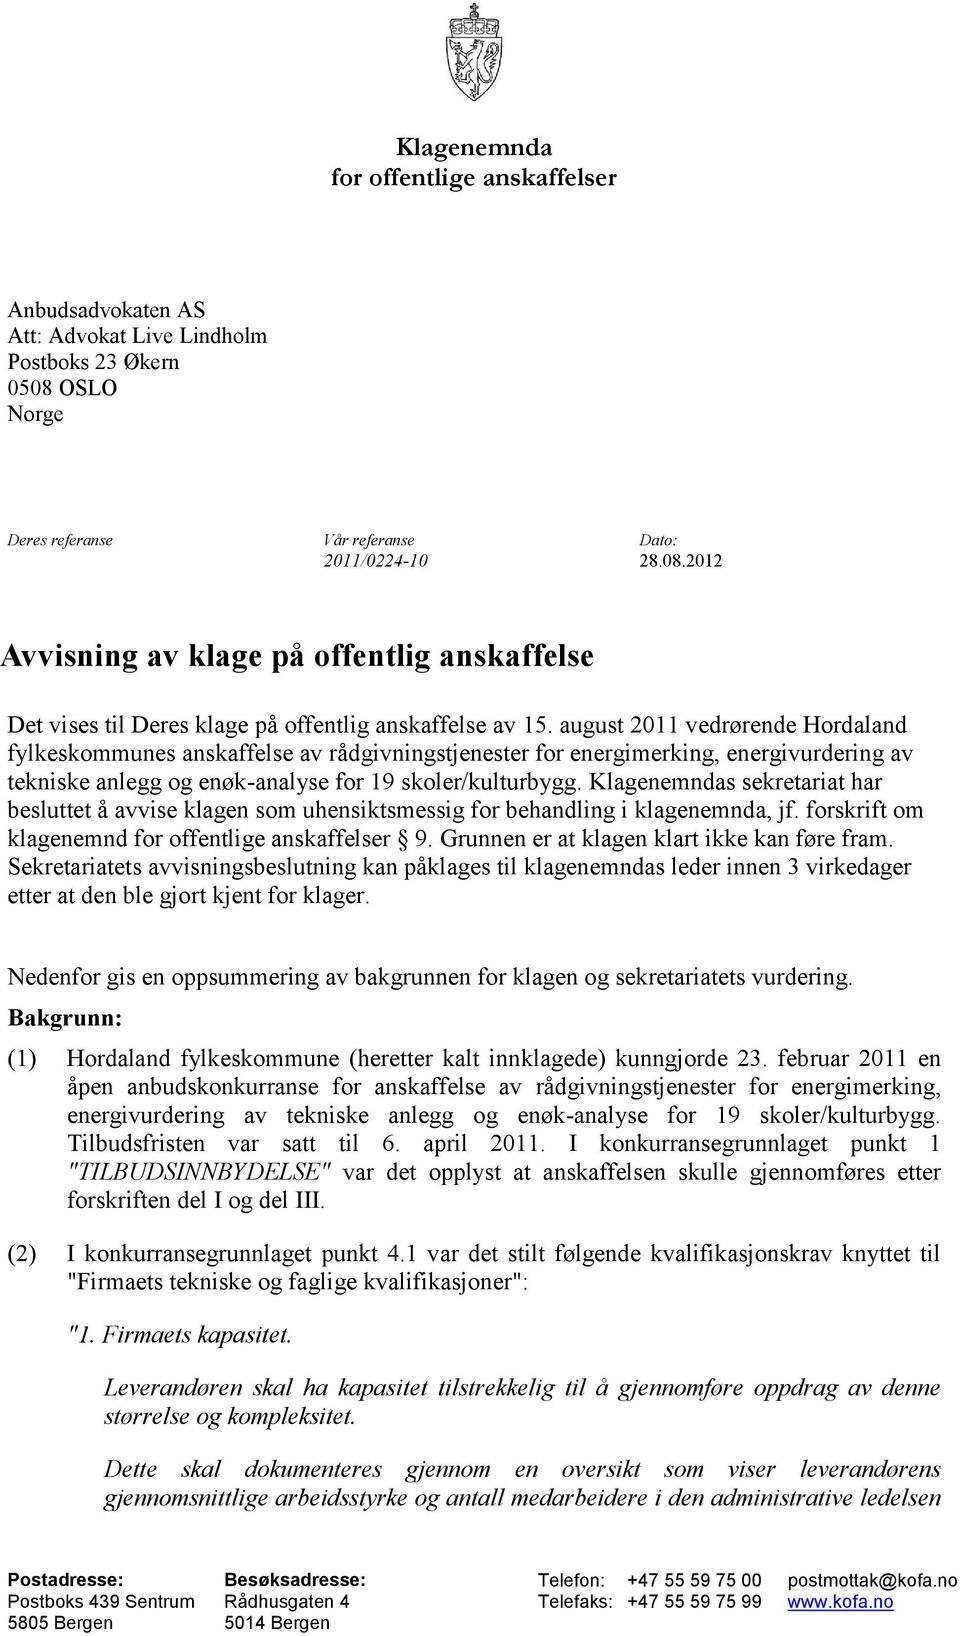 august 2011 vedrørende Hordaland fylkeskommunes anskaffelse av rådgivningstjenester for energimerking, energivurdering av tekniske anlegg og enøk-analyse for 19 skoler/kulturbygg.